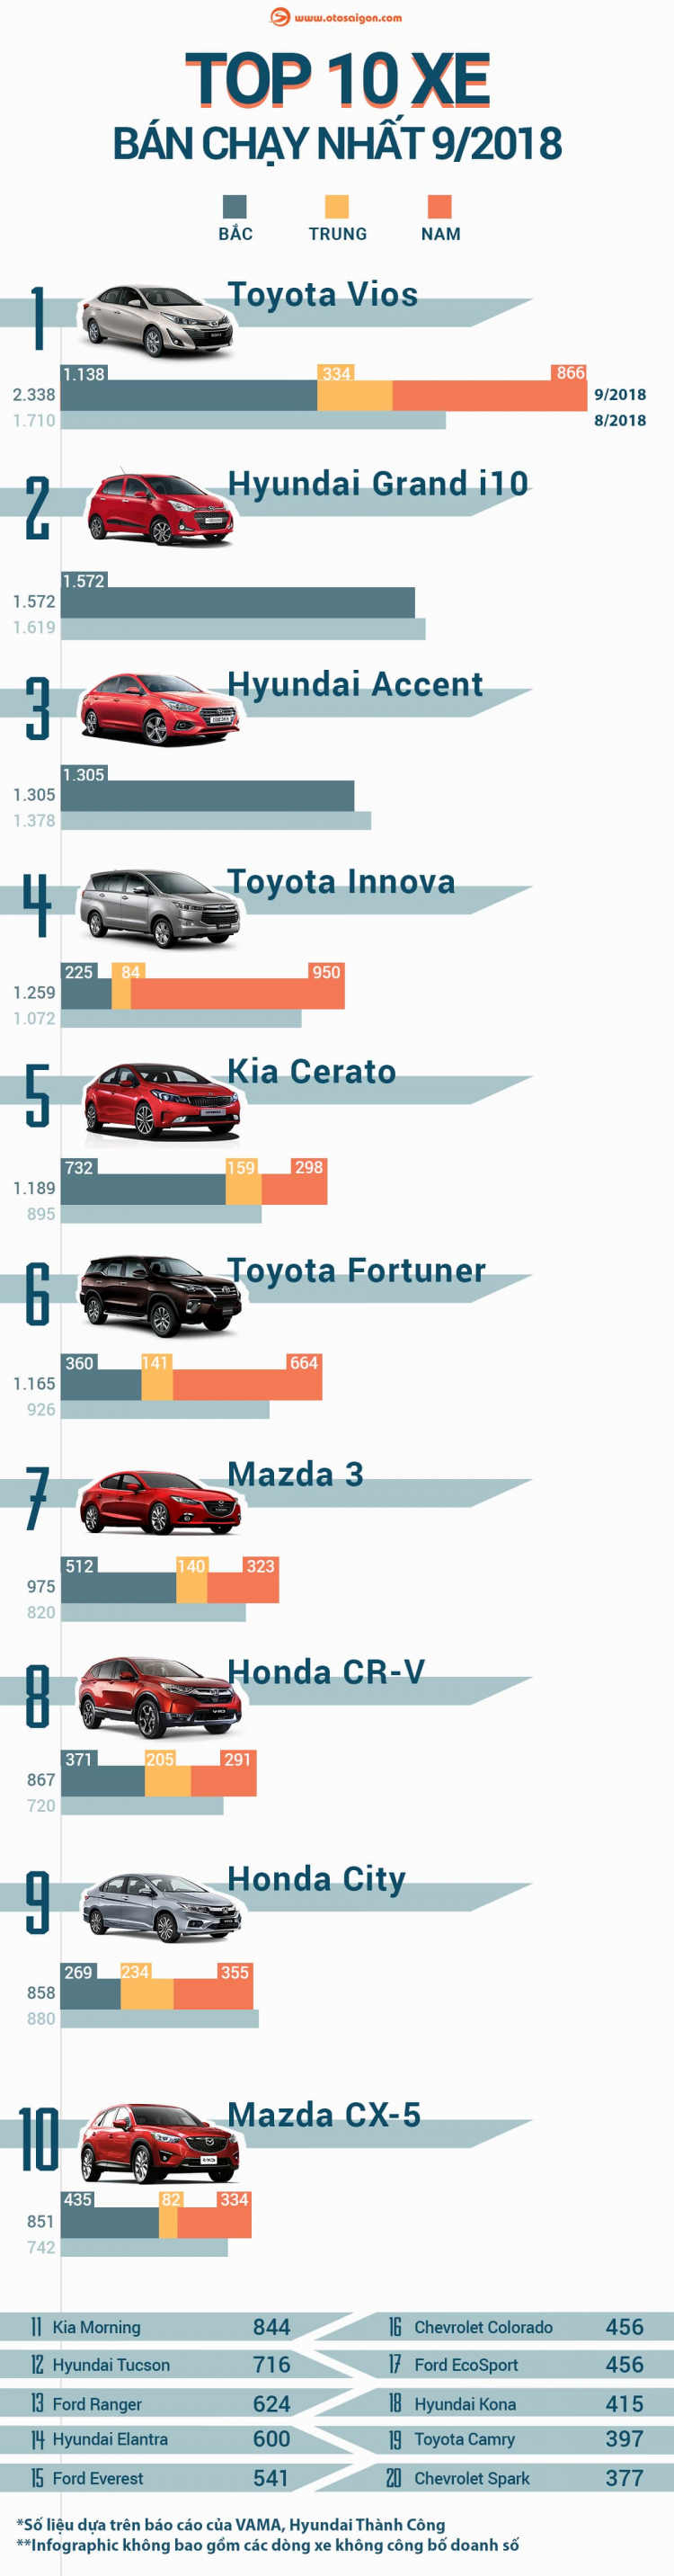 [Infographic] Top 10 xe bán chạy nhất tháng 9/2018